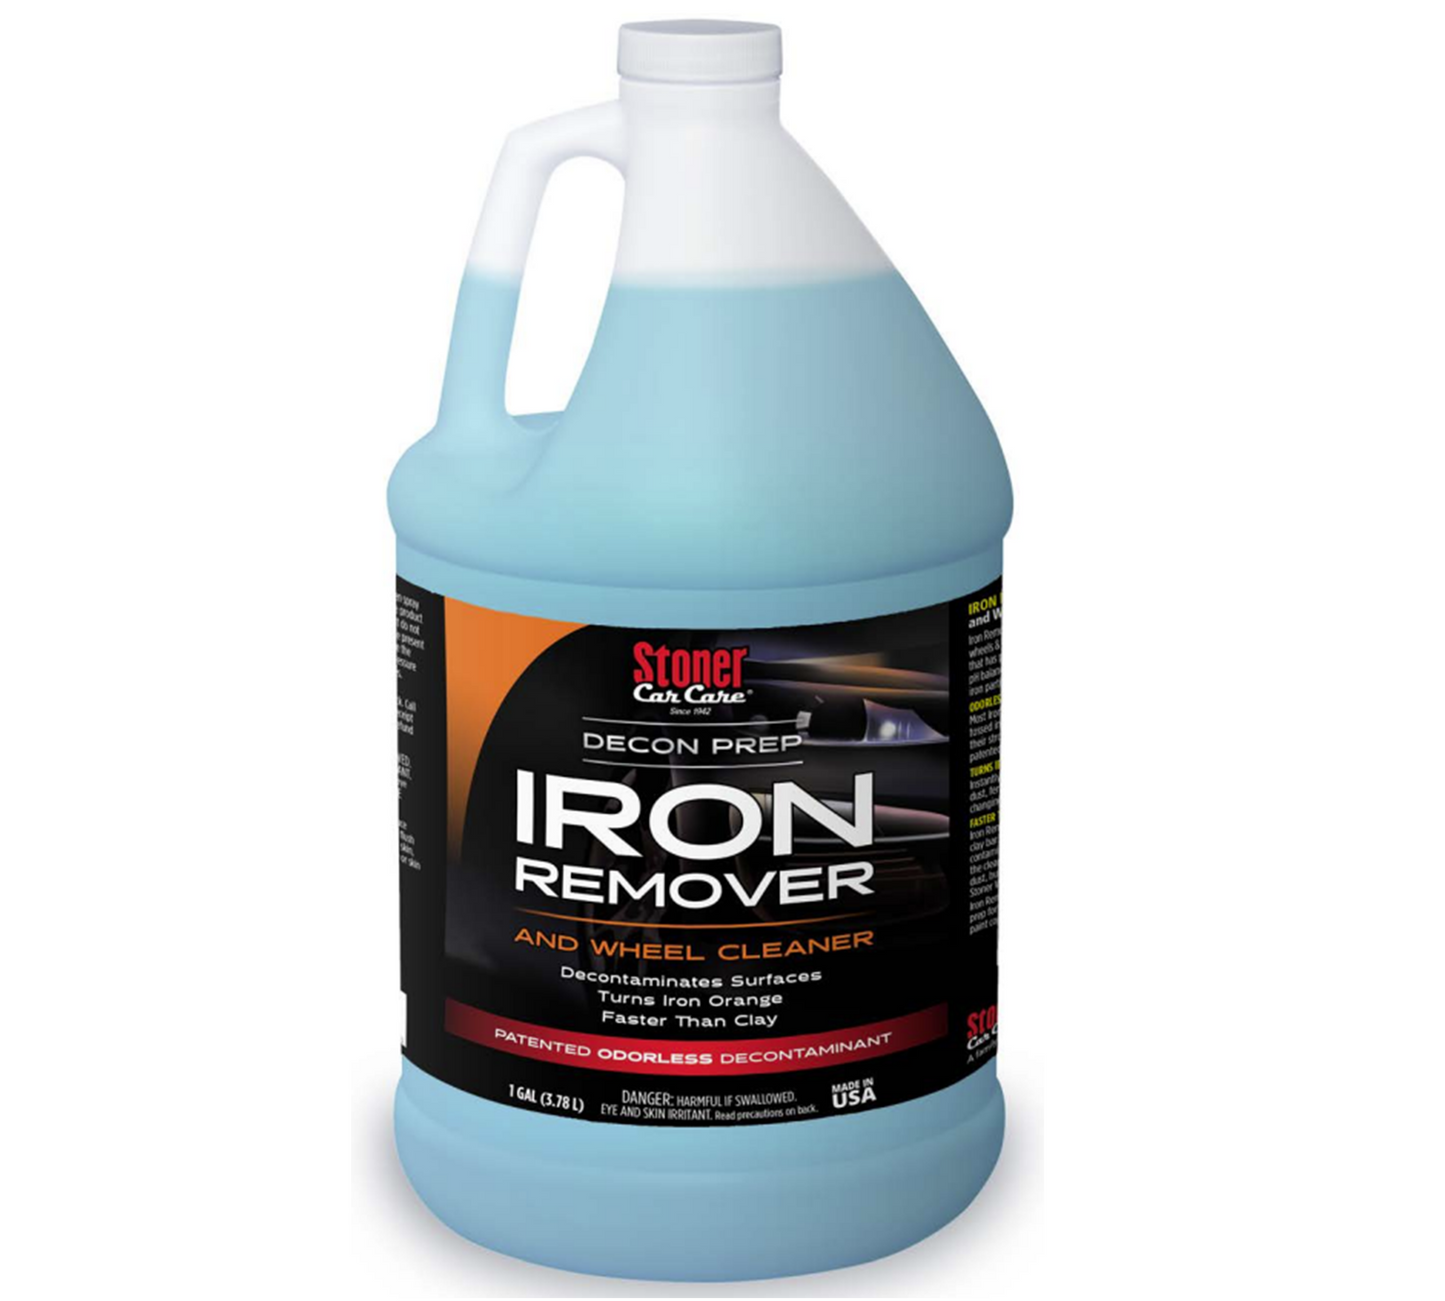 Iron Eraser 1 Gallon